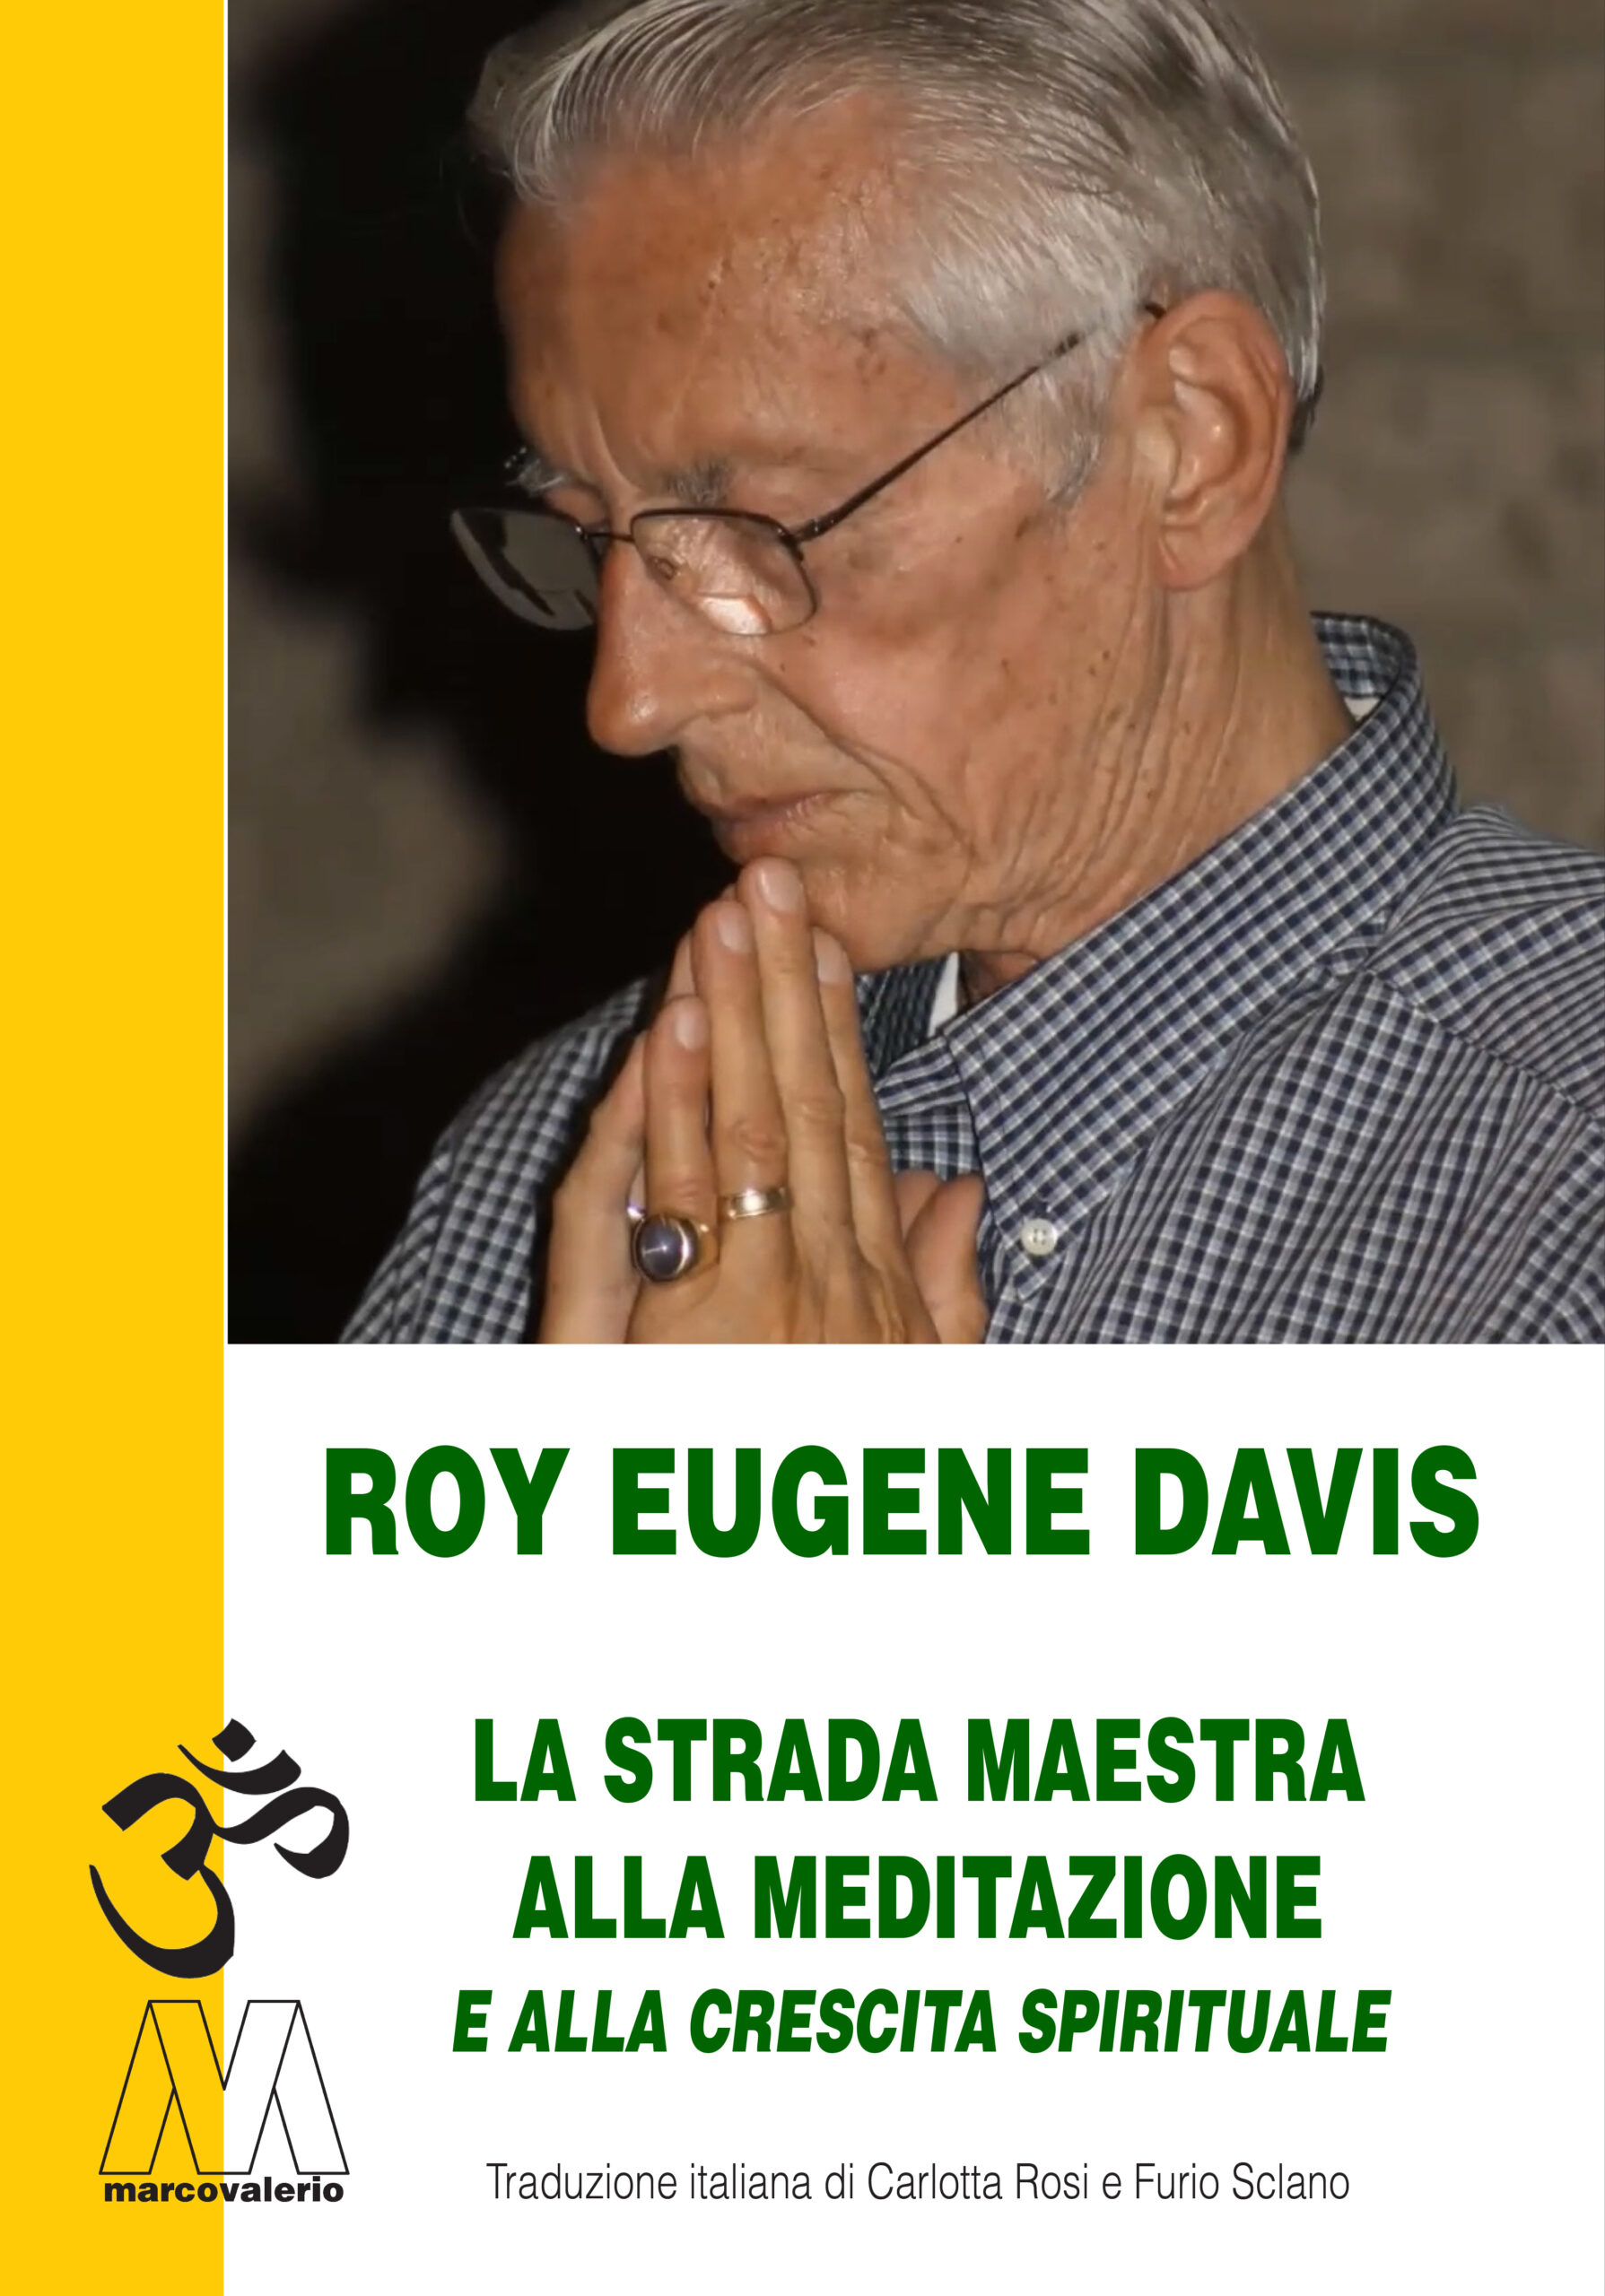 Roy Eugene Davis - La strada maestra alla meditazione e alla crescita spirituale